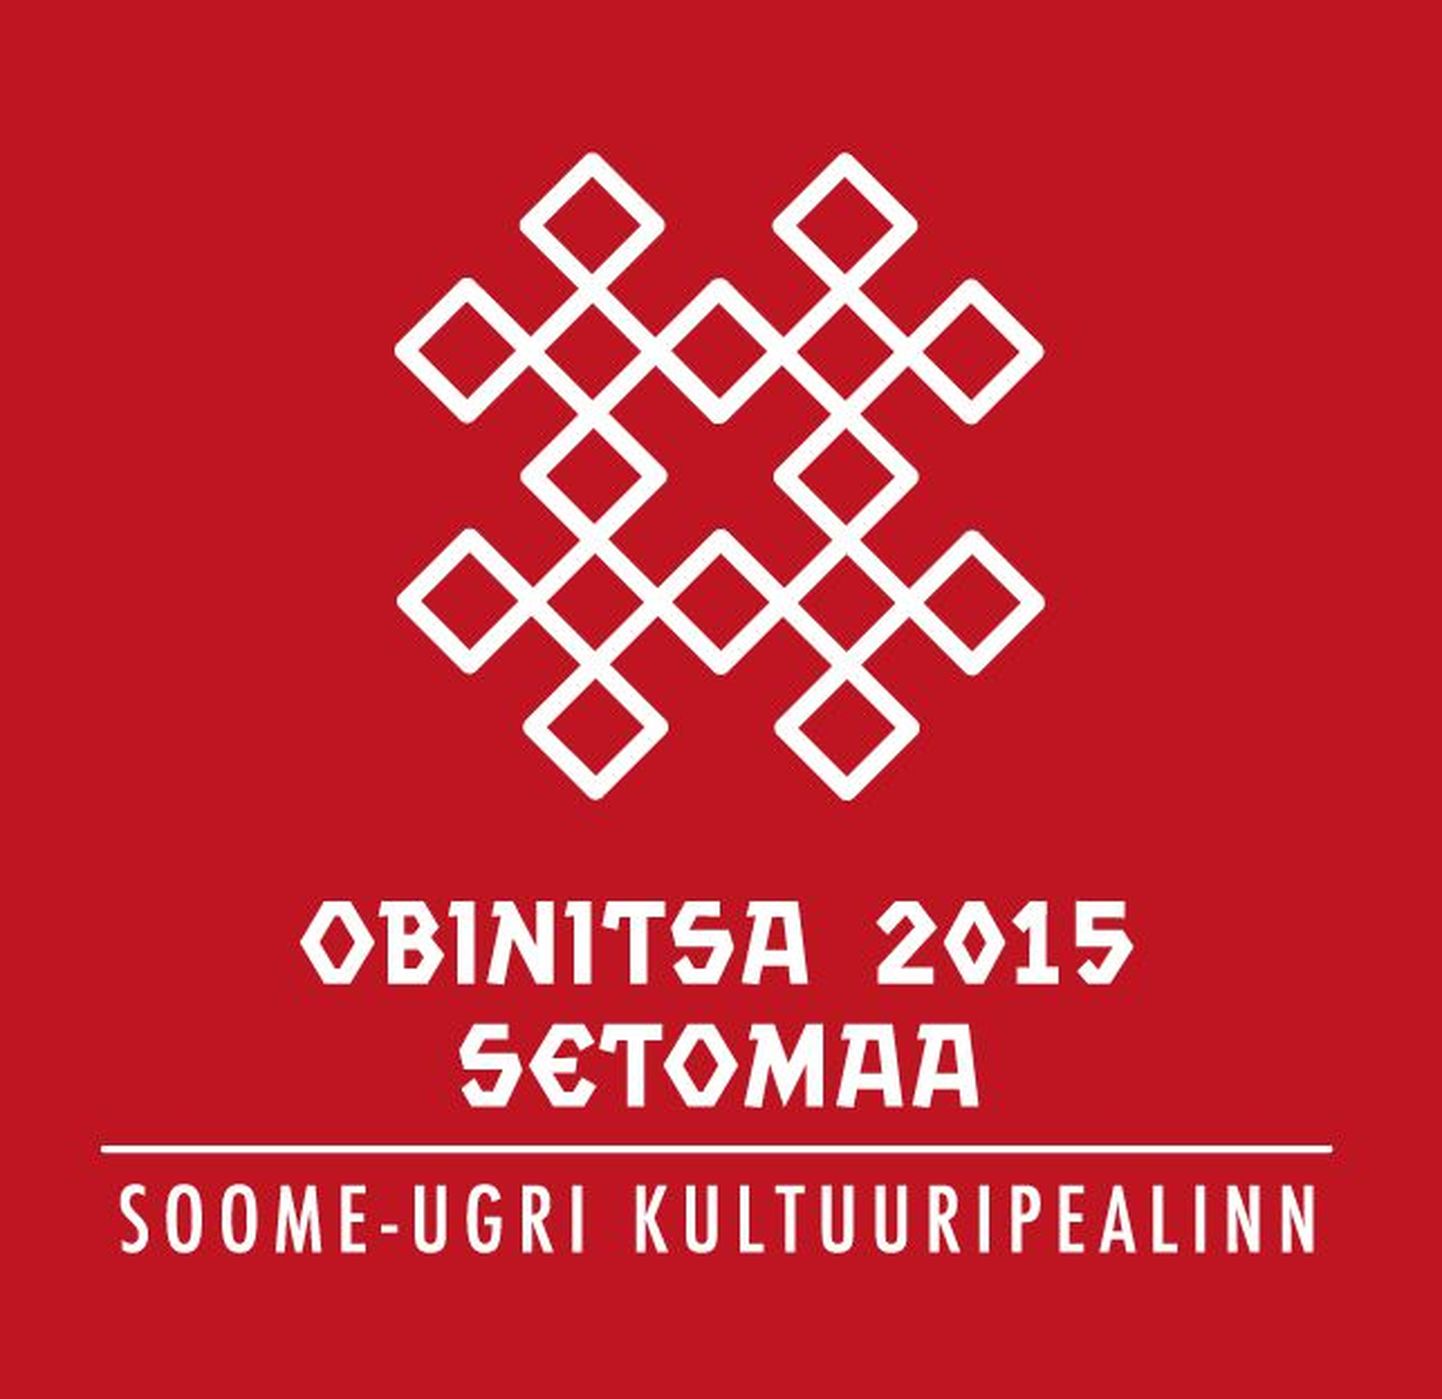 Soome-ugri kultuuripealinn on 2015 aastal Setomaal, Obinitsas.